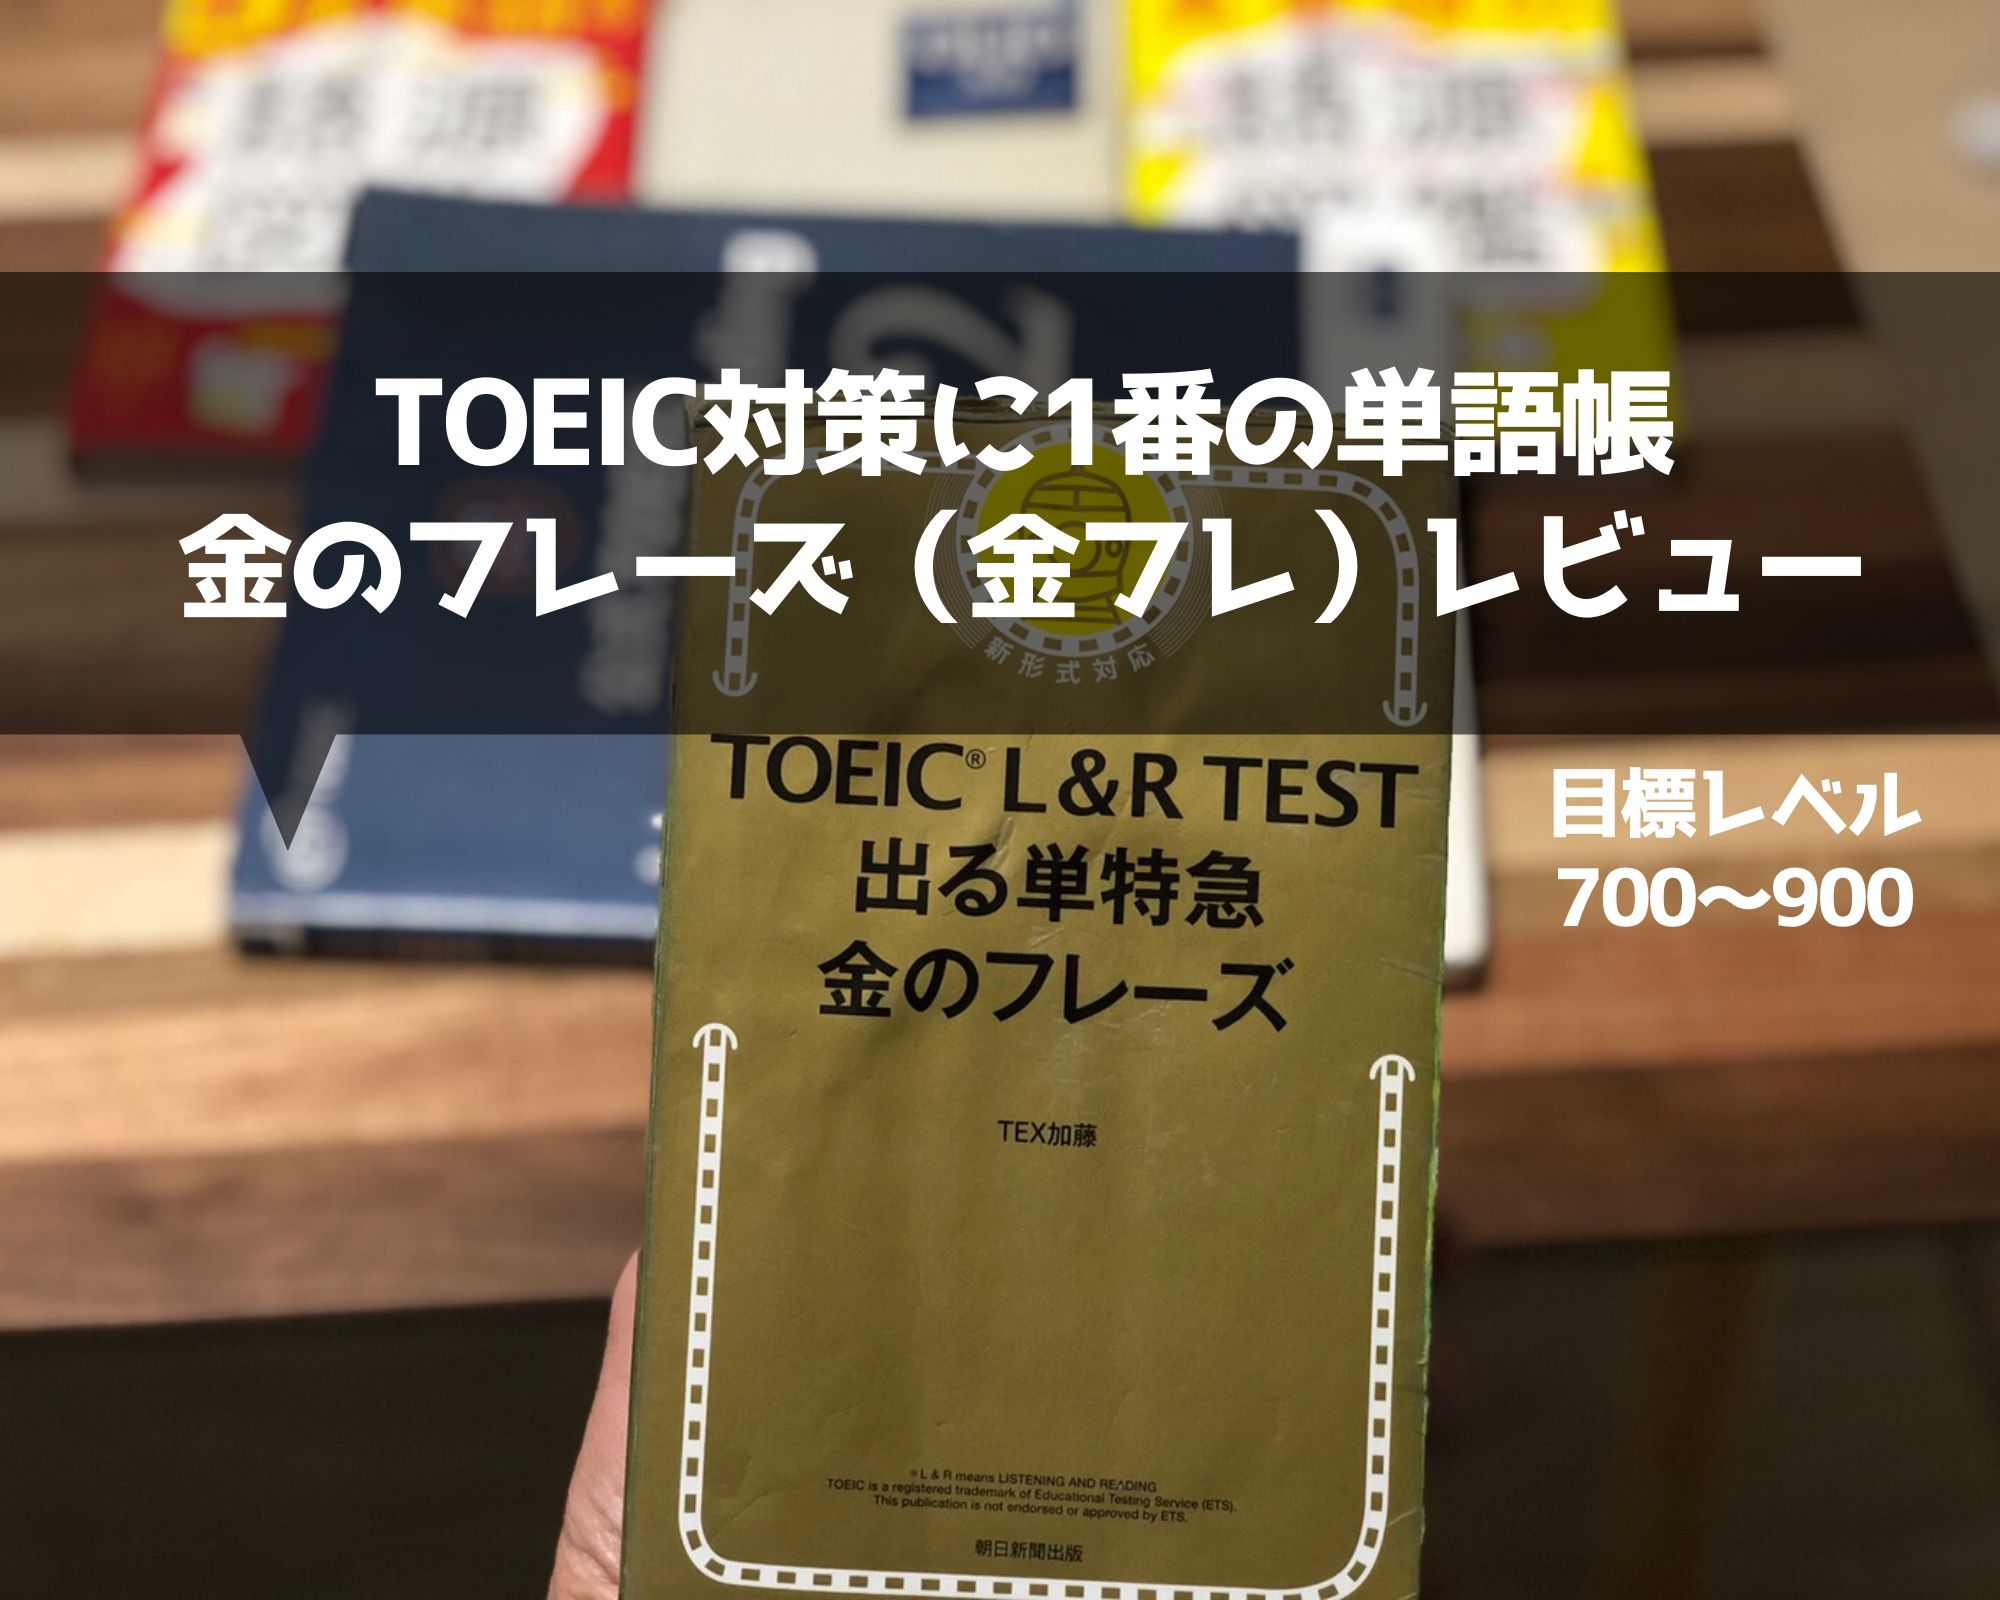 Toeic900も狙える単語帳 金のフレーズの評価と使い方 Japuano Com